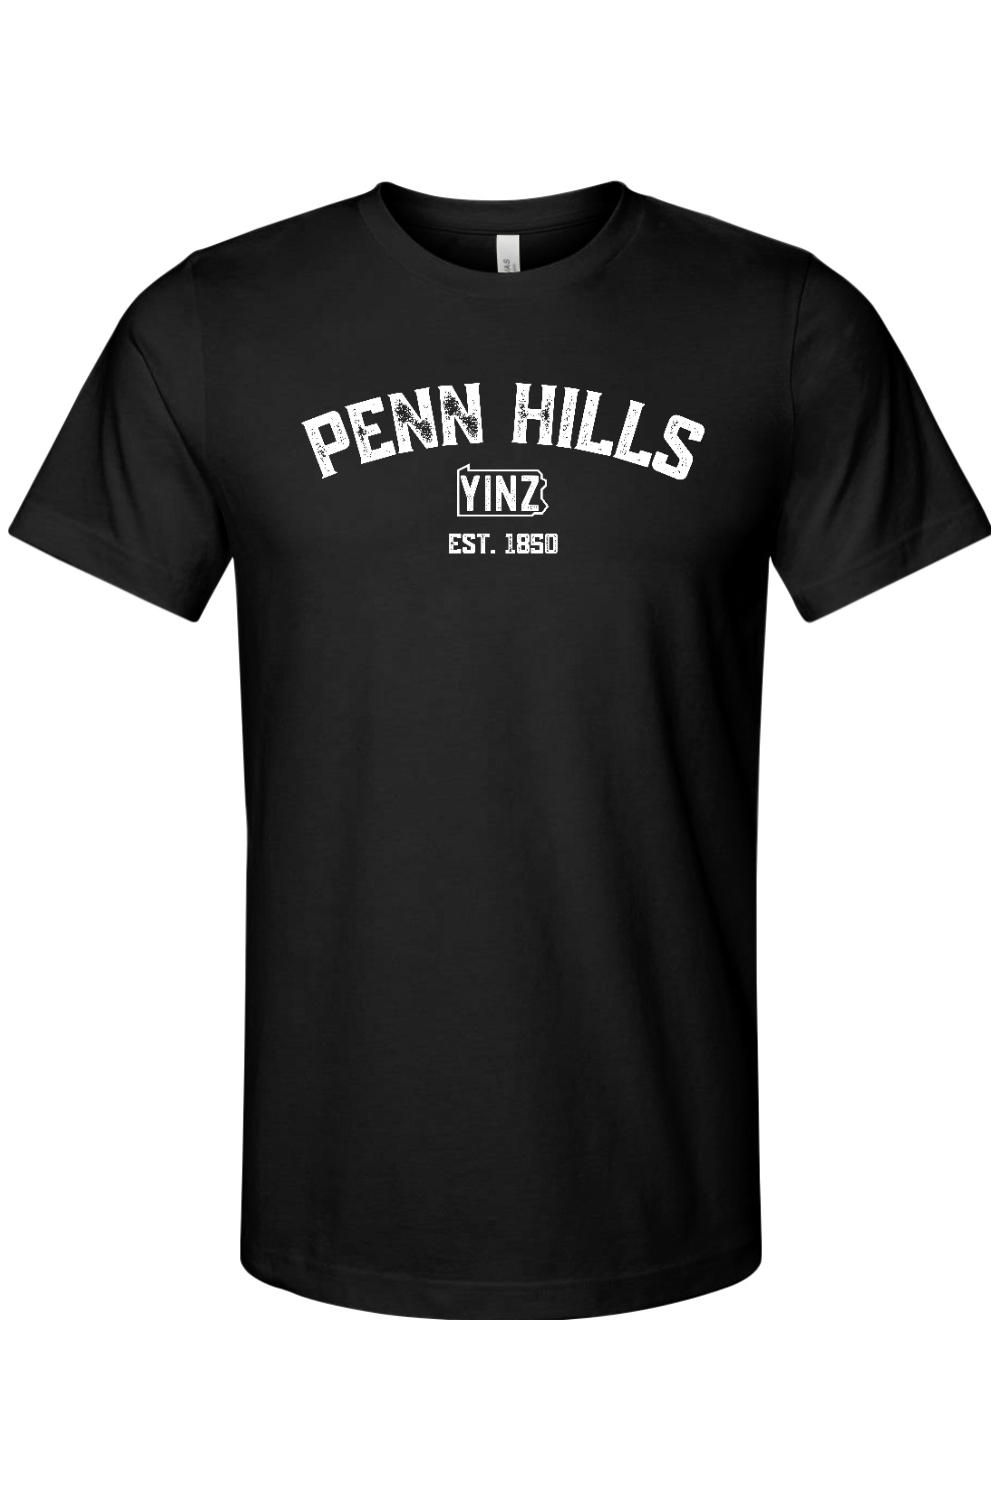 Penn Hills Yinzylvania - Yinzylvania